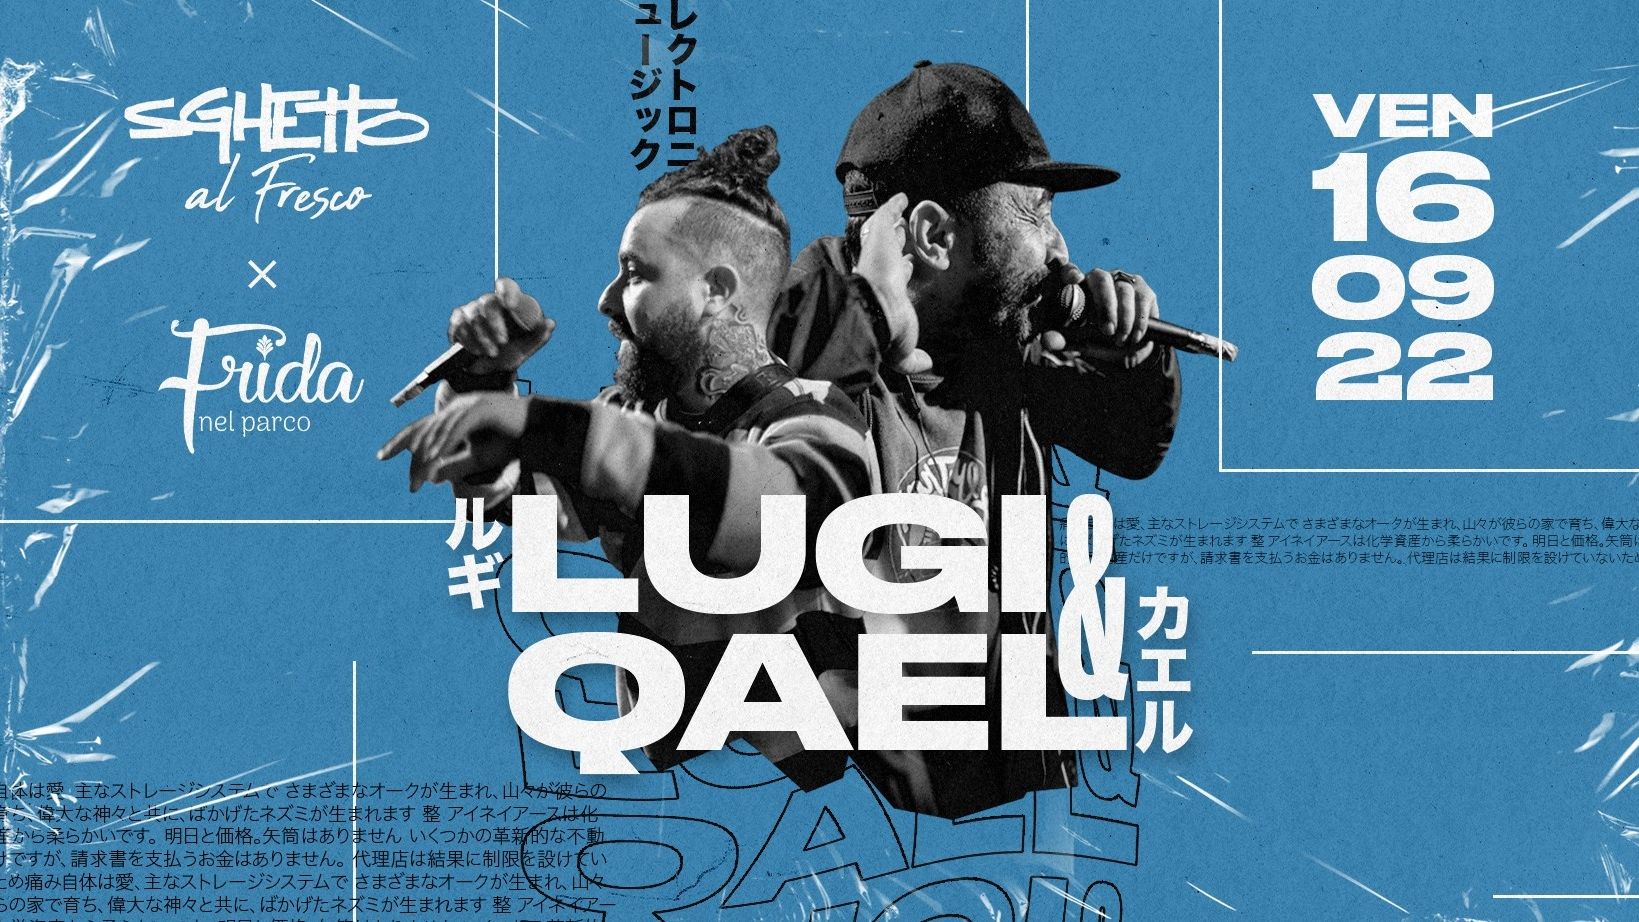 Sghetto Al Fresco: DJ Lugi & QAEL